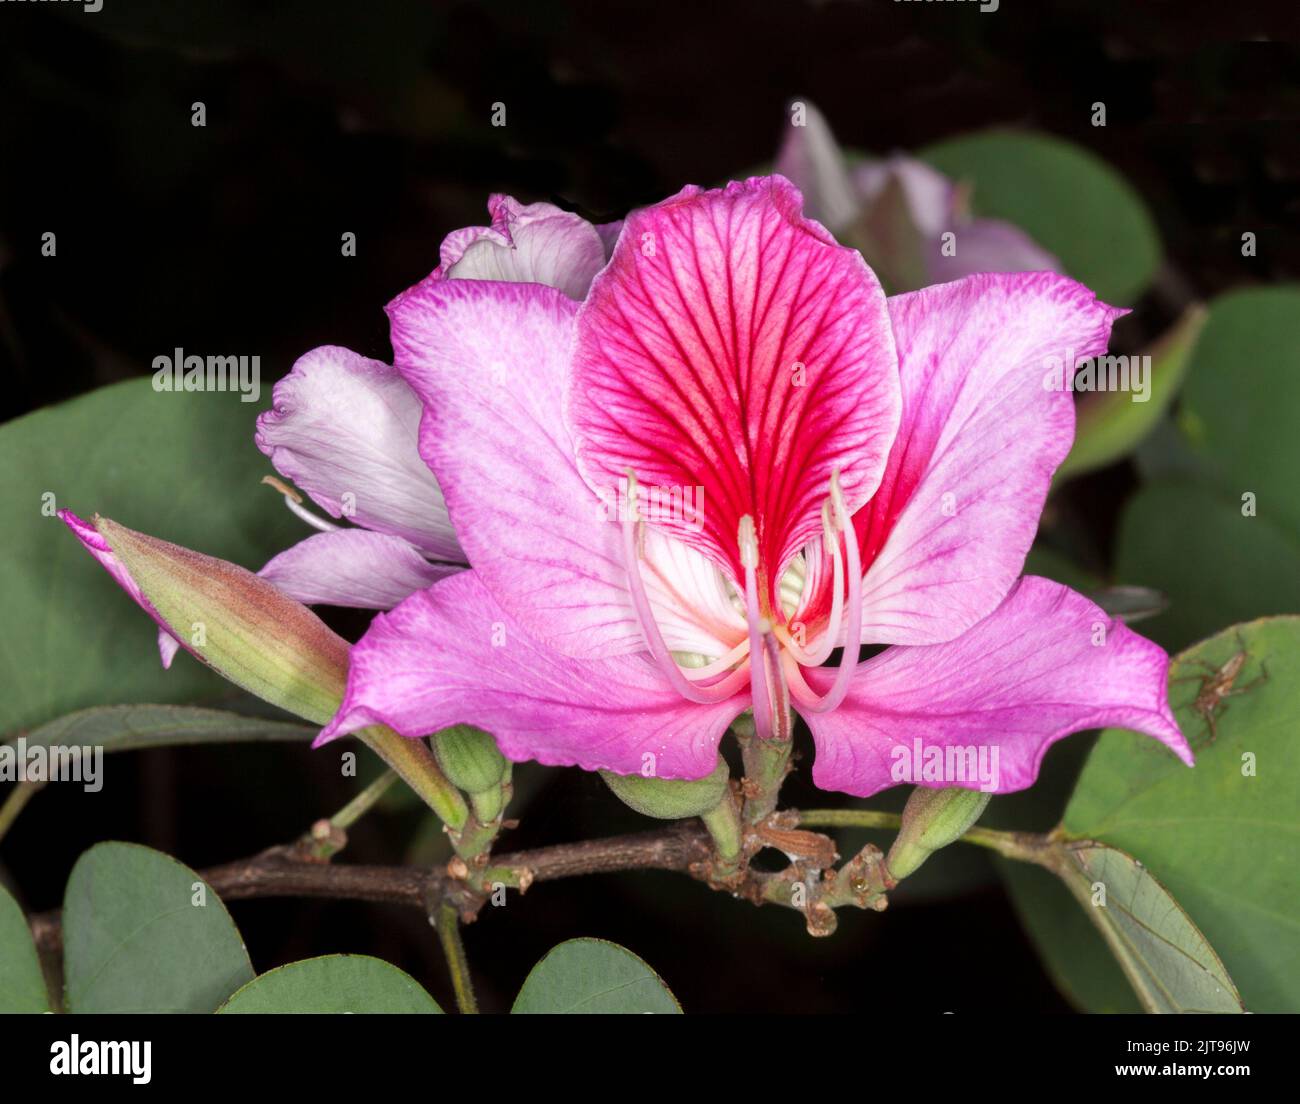 Spettacolare fiore profumato rosa e foglie verdi di Bauhinia variegata, albero deciduo delle Orchidee, su sfondo scuro, in Australia Foto Stock